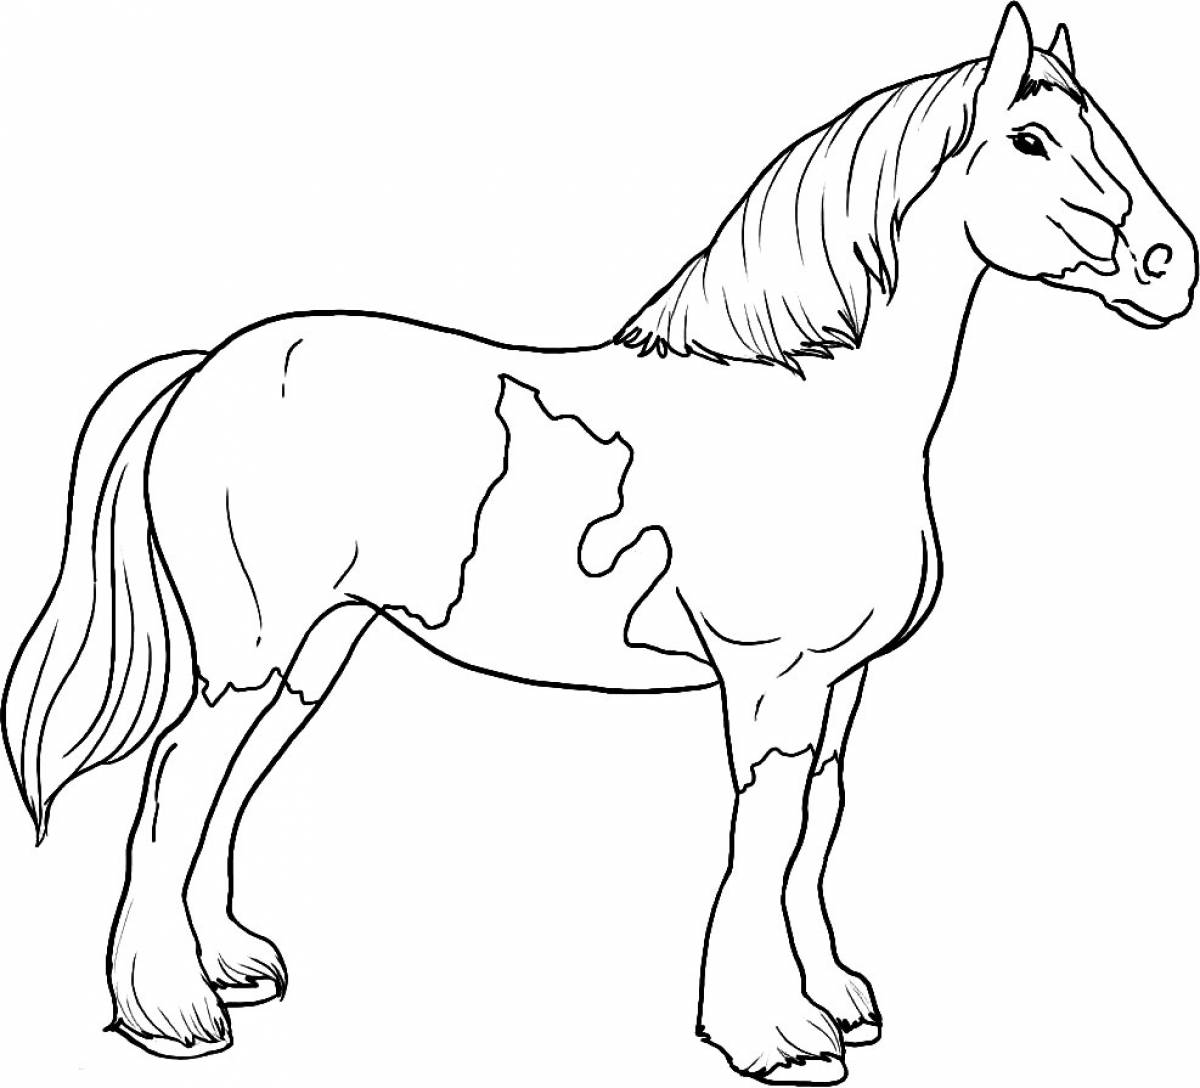 Раскрашиваем лошадку. Раскраска. Лошади. Картинки для раскрашивания лошадки. Лошадь раскраска для детей. Лошадь картинка для детей раскраска.